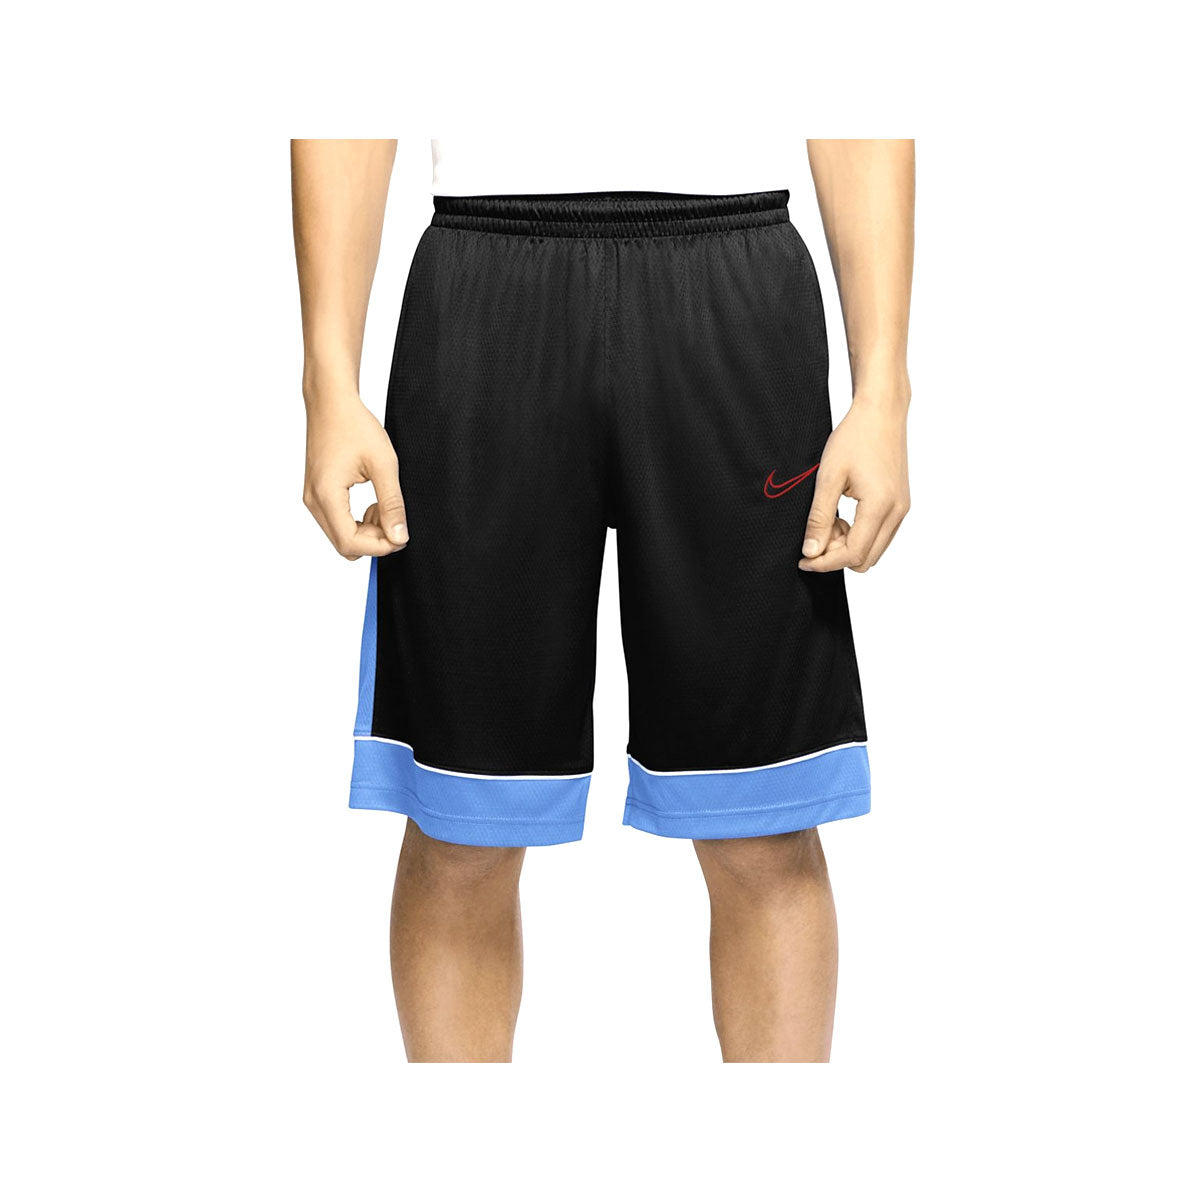 Nike Men's Dri-Fit Basketball Shorts Black Blue